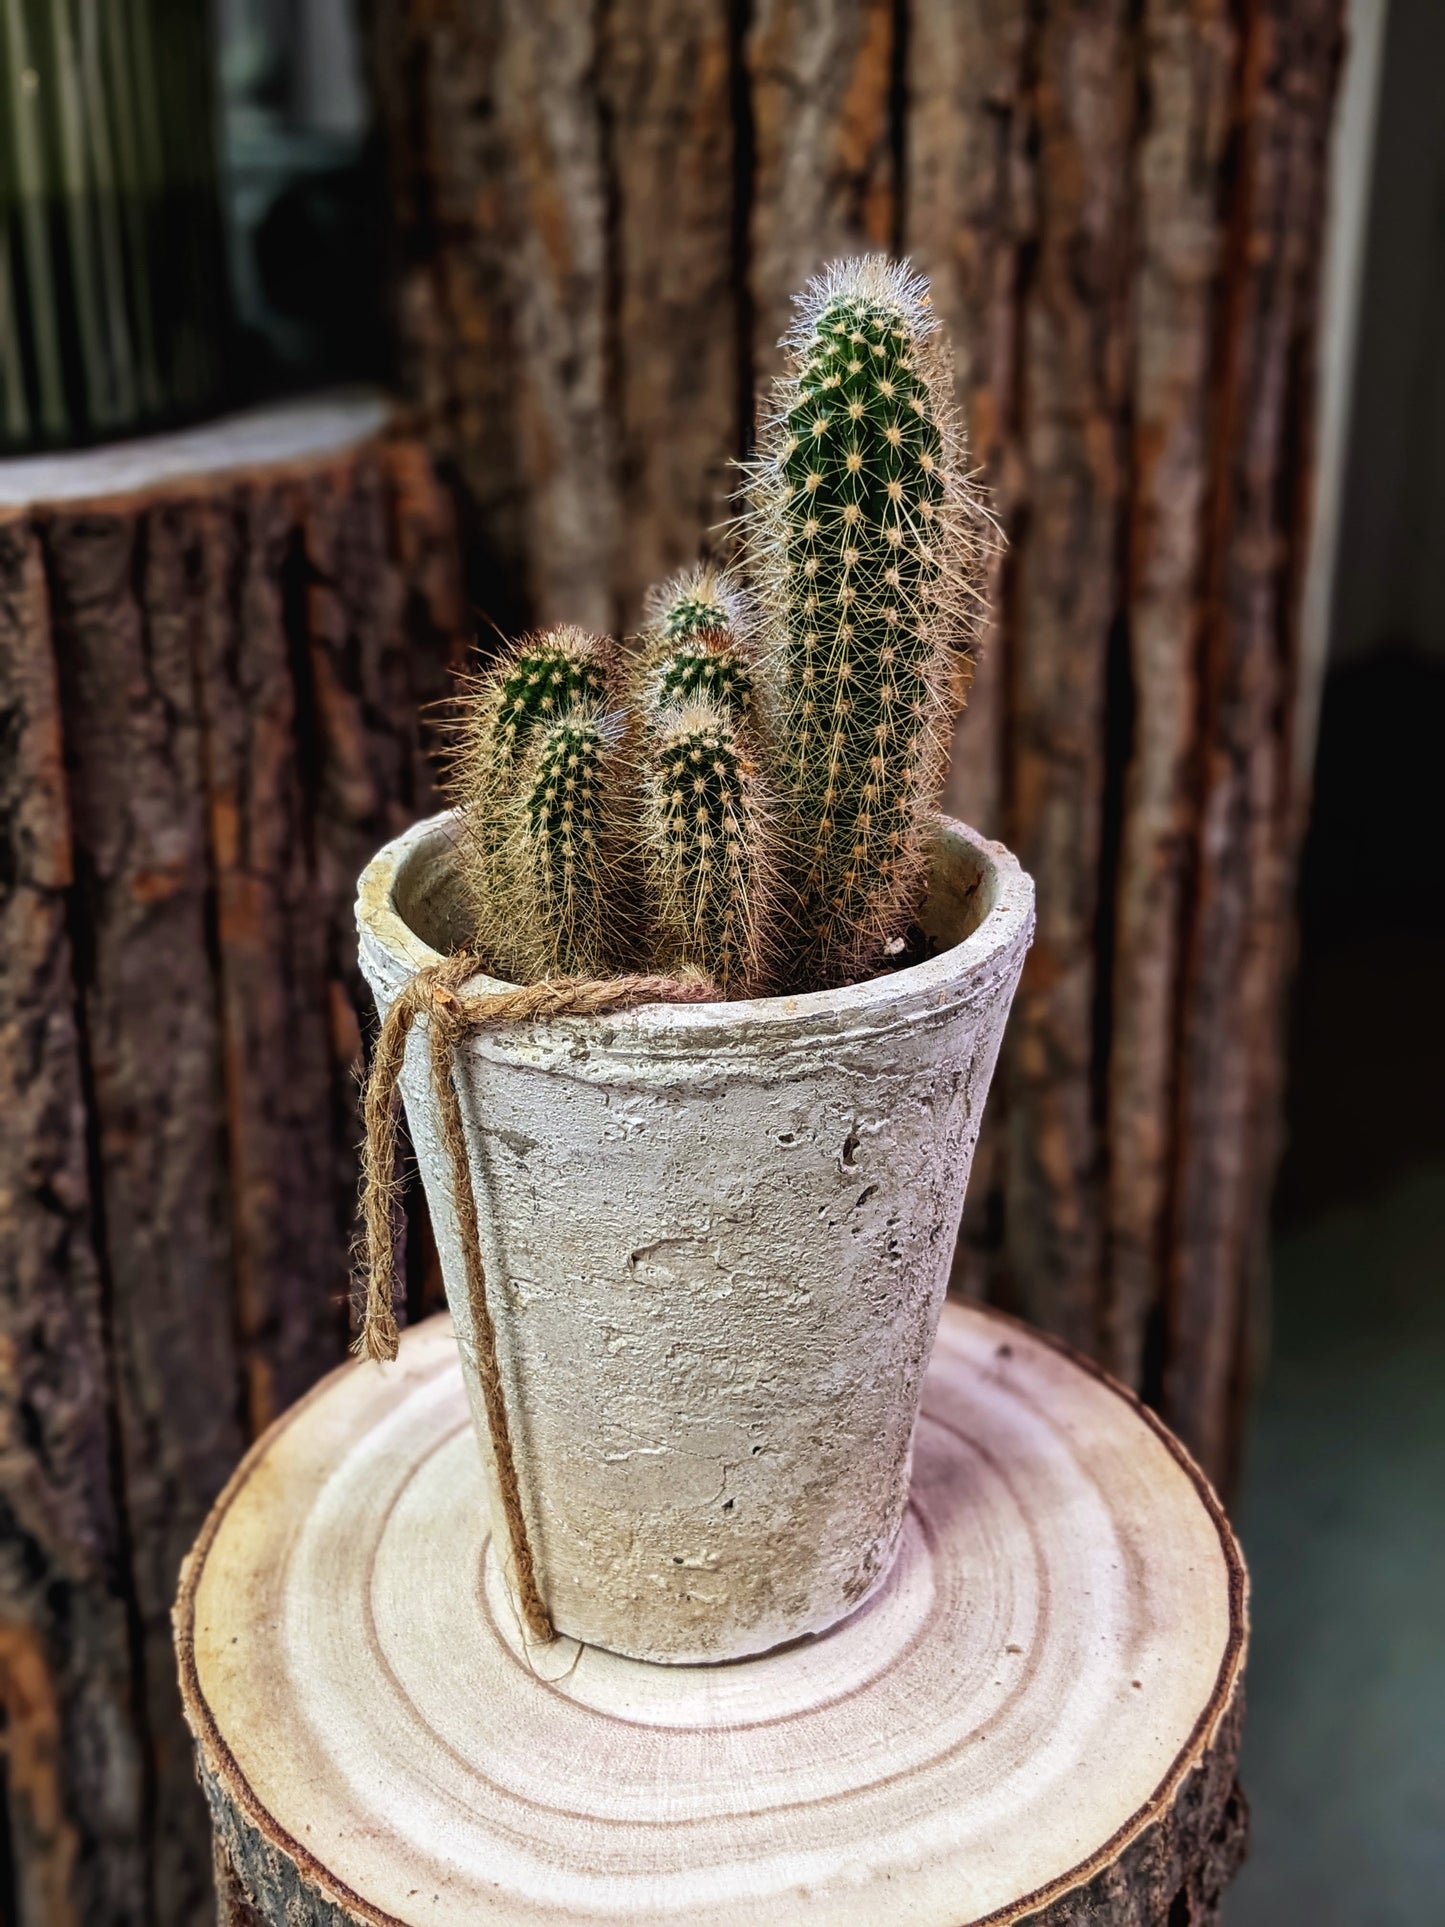 Bristly (Cactus)